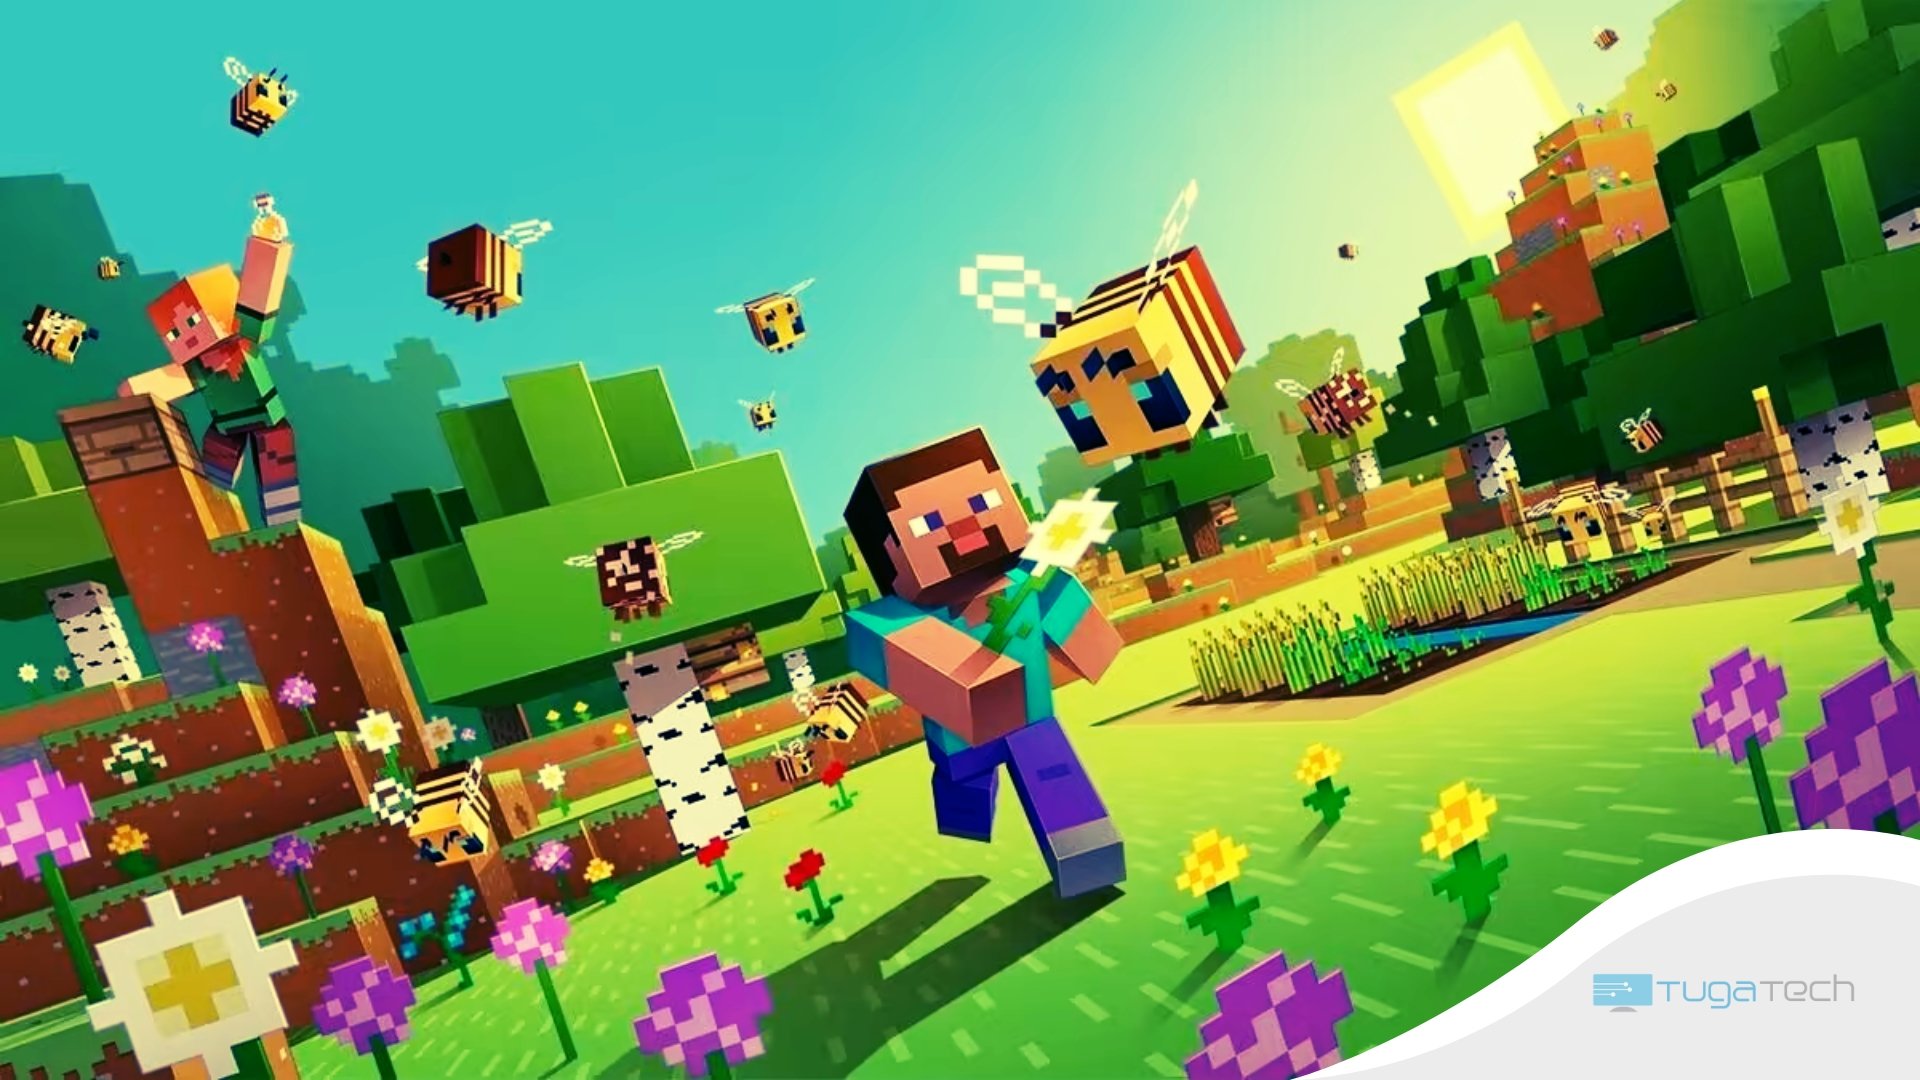 Minecraft imagem de fundo do jogo